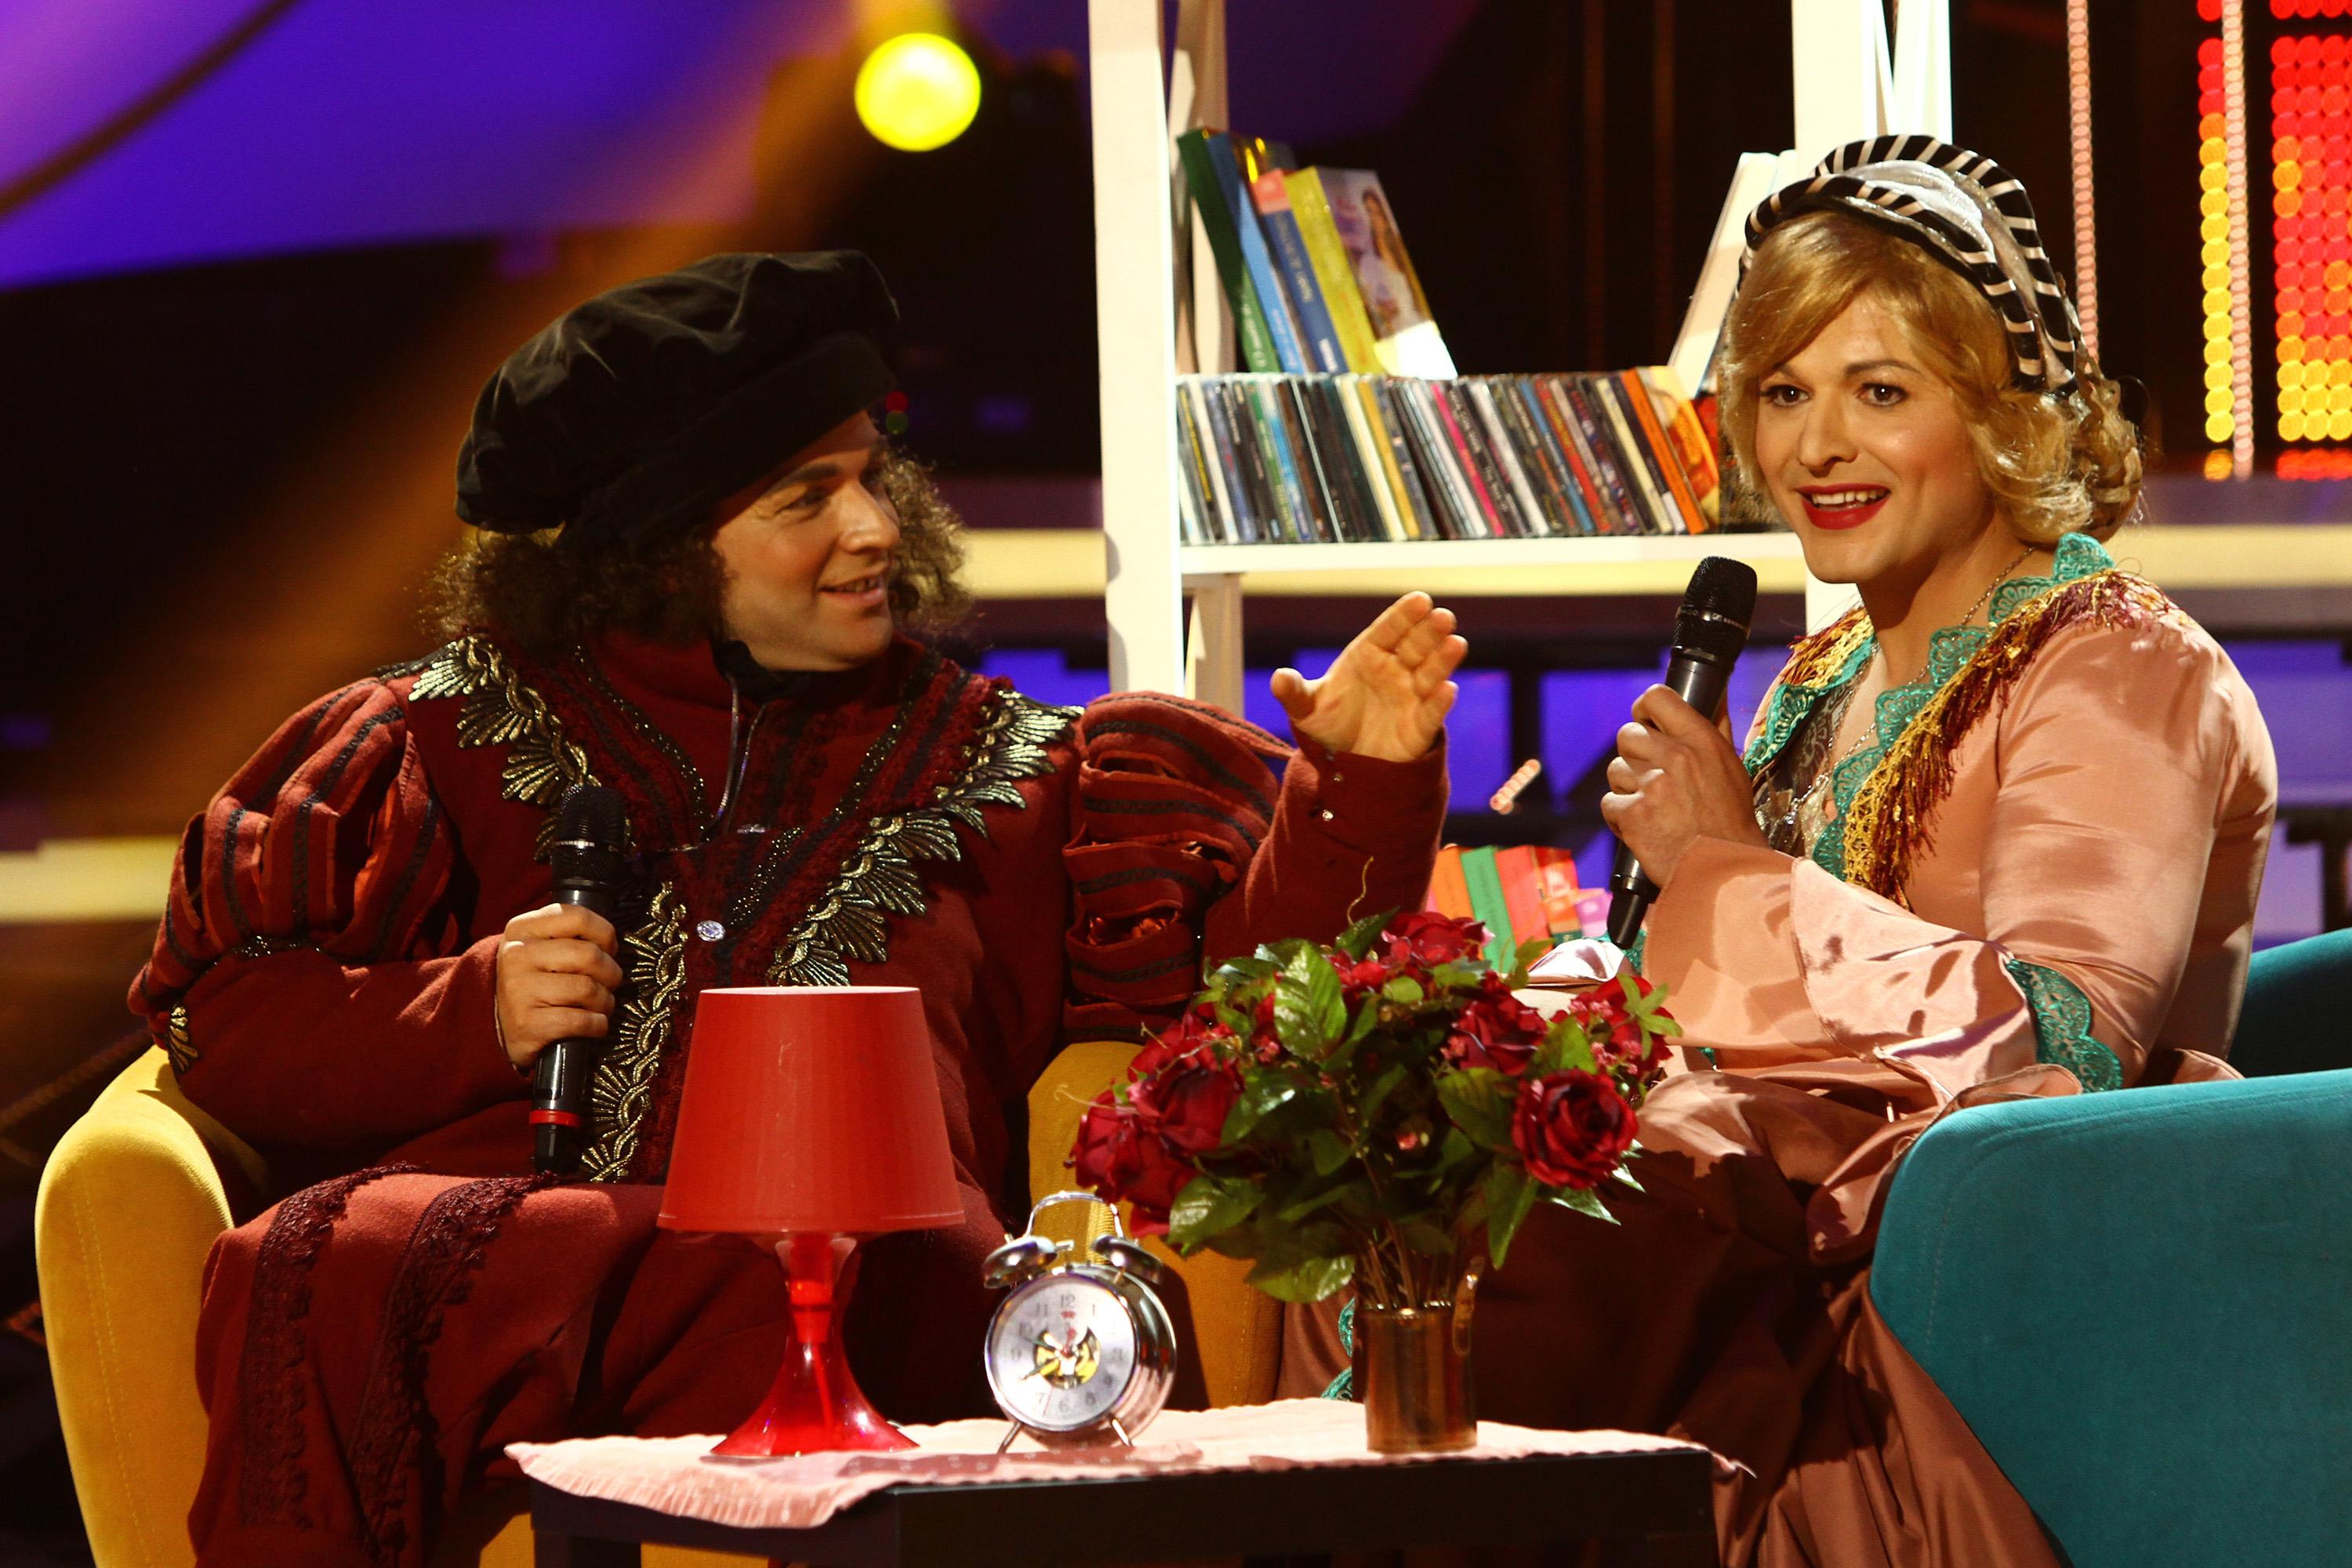 Nimeni nu-i poate întrece! Liviu Vârciu și Andrei Ștefănescu au fost niște adevărați „trubaduri”, în stil Marian și Dorina Nistor!